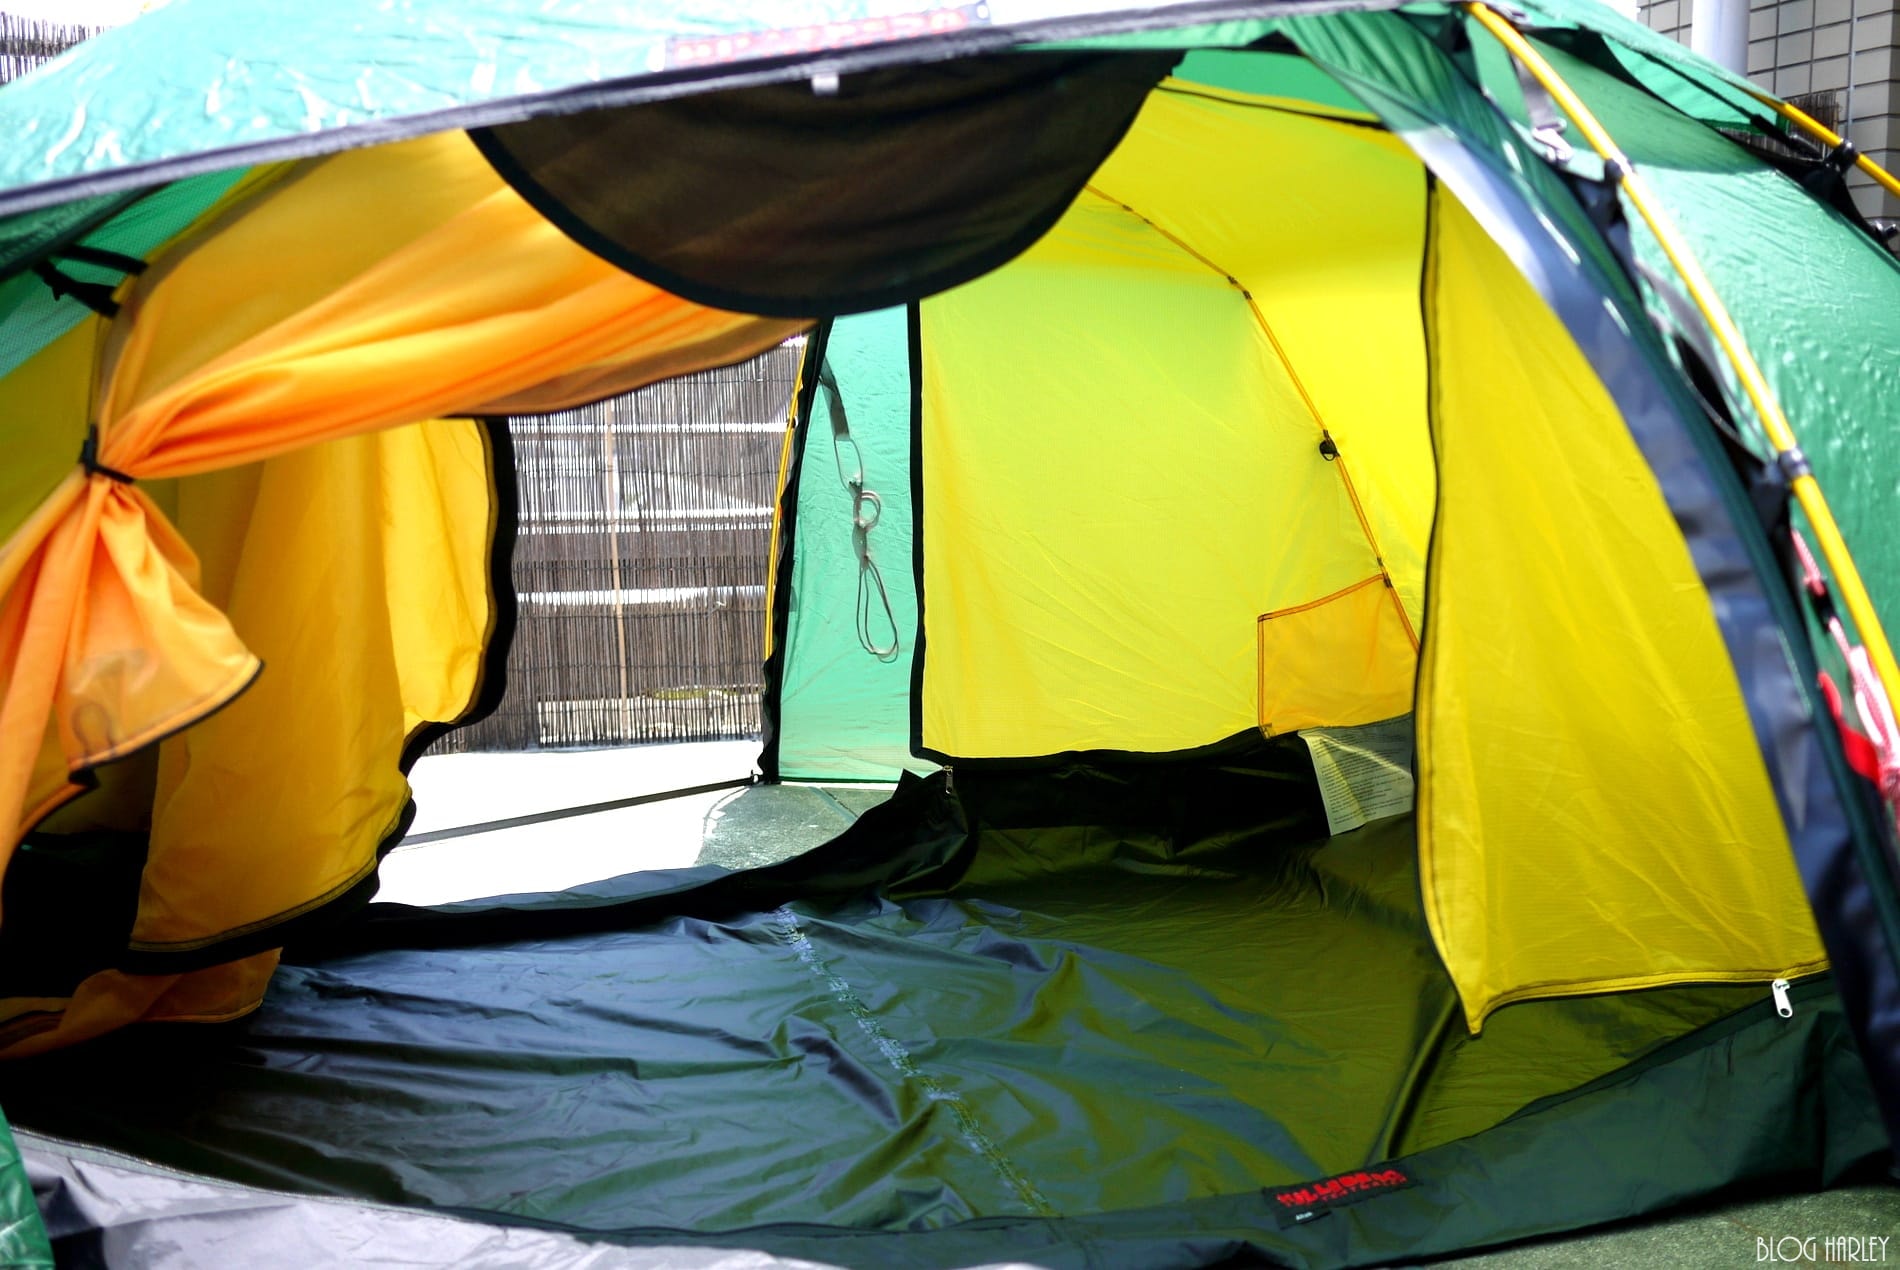 新着テント、試し張り。ヒルバーグ アラック | BLOG HARLEY - キャンプ用品